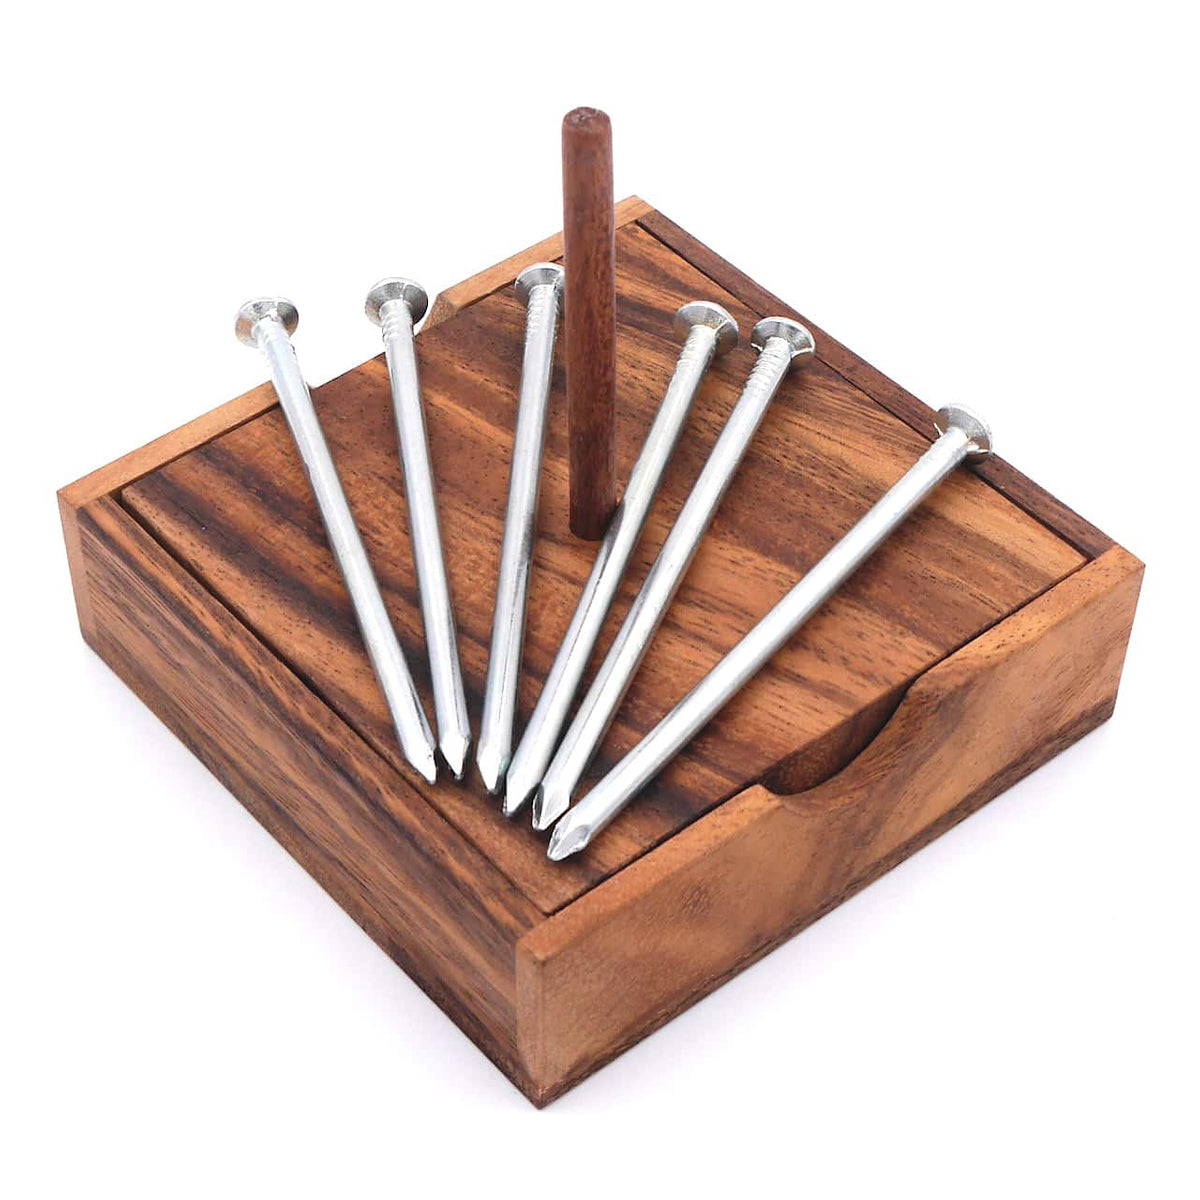 Ein Knobelspiel aus Holz, bei dem der Spieler Nägel auf einem Holzstab anordnen muss.